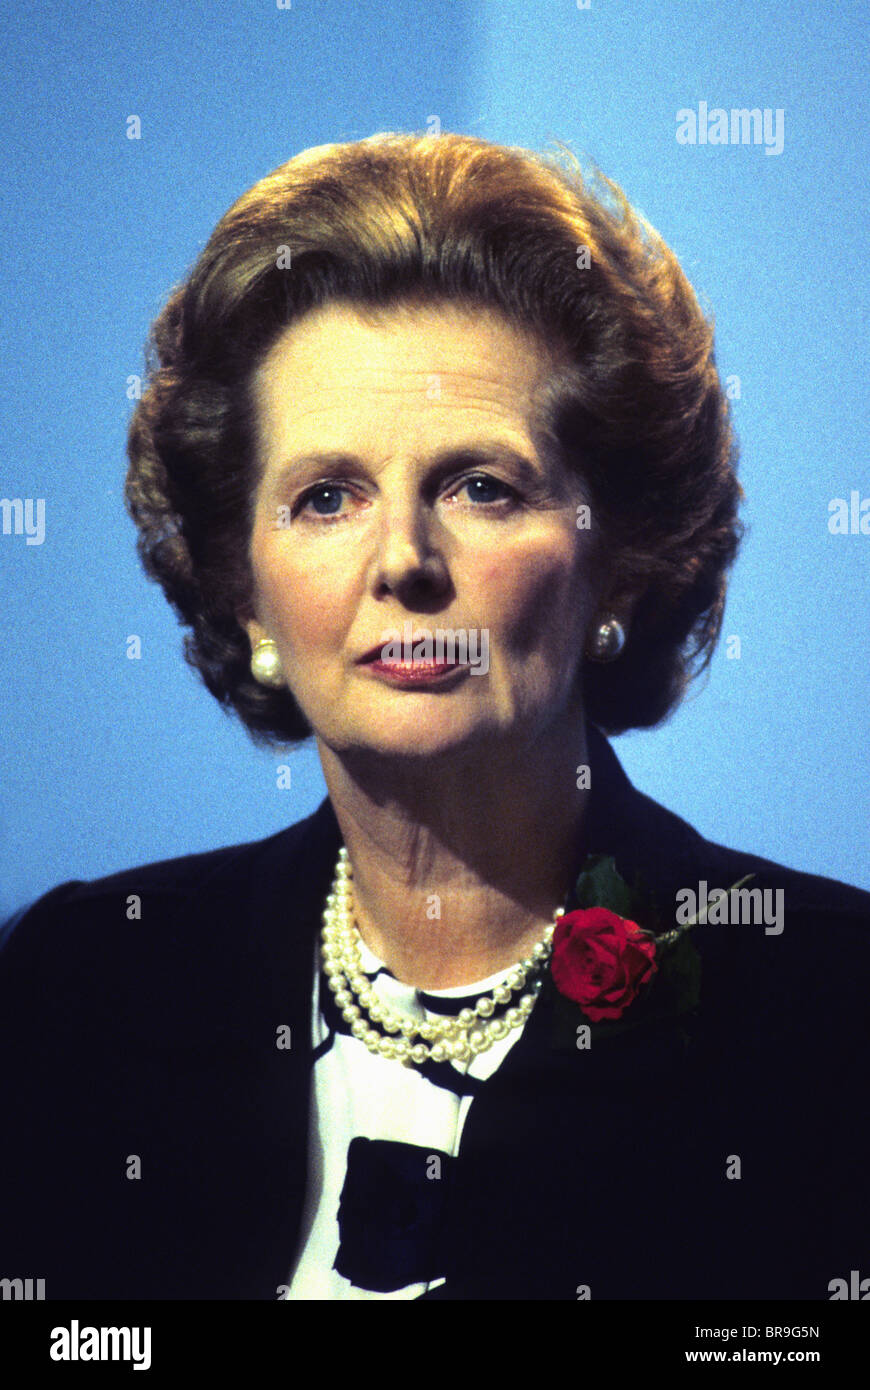 Margaret Thatcher auf dem Höhepunkt ihrer Kräfte in den frühen 1980 von seltenen Konstellation von Farbbildern "Ausdruck". Stockfoto